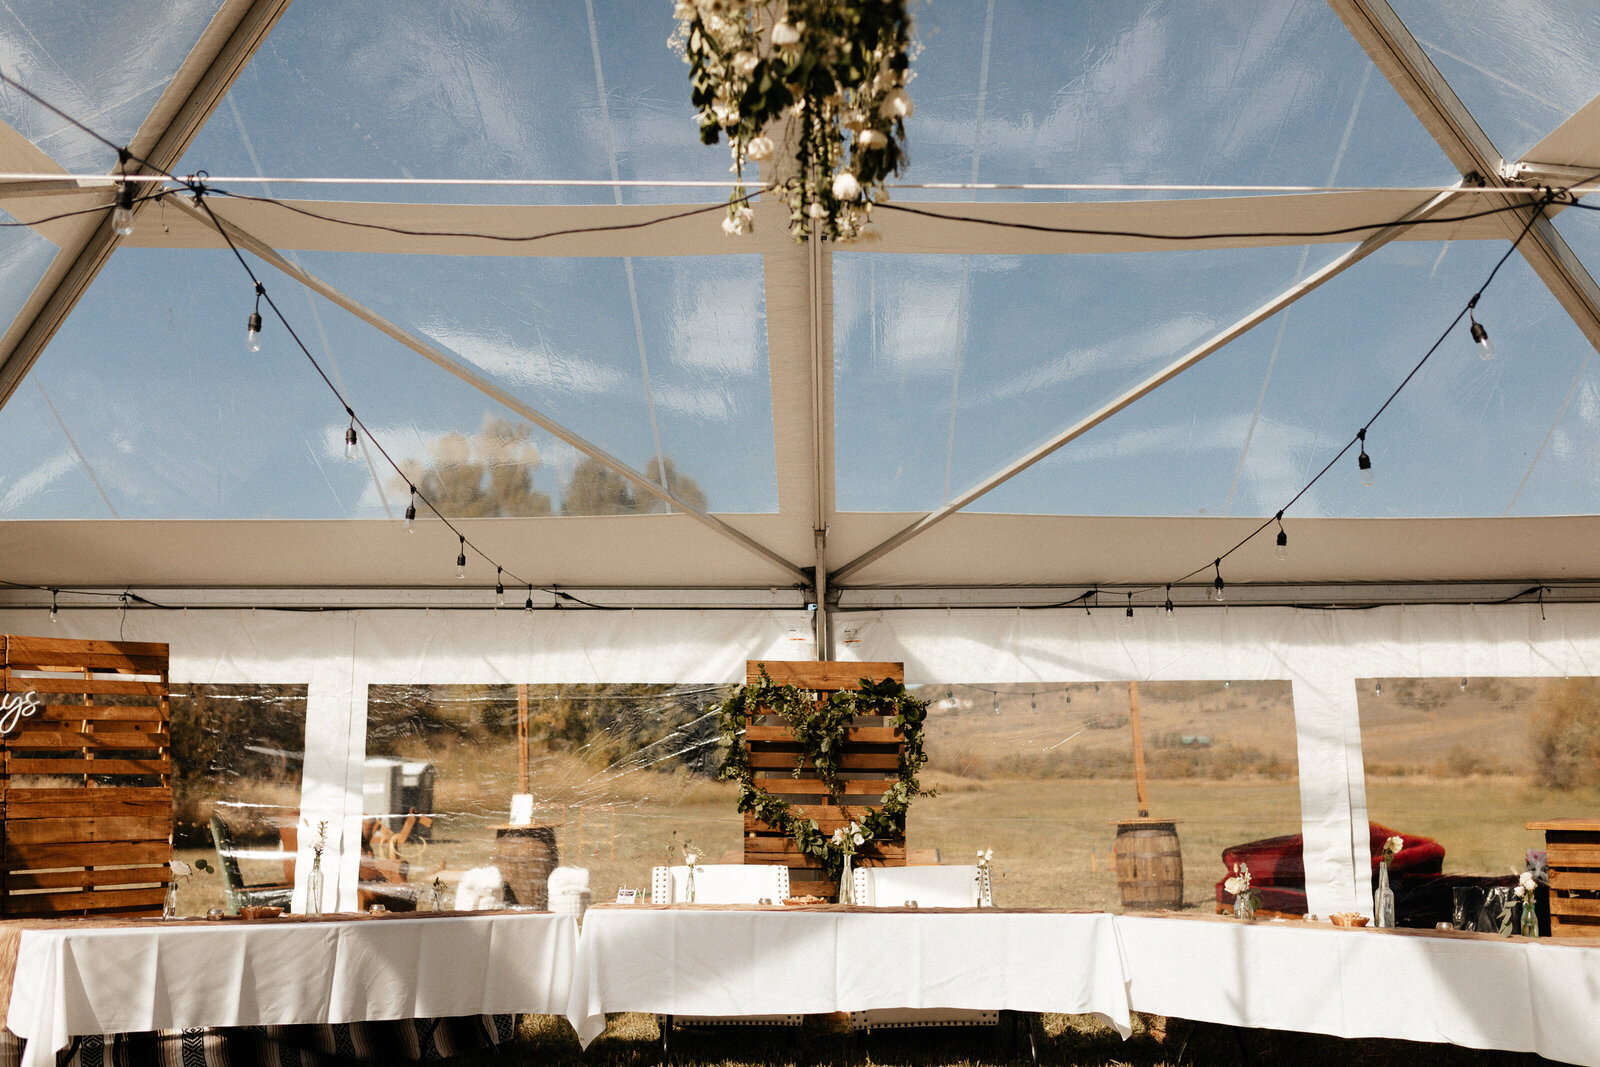 Steamboat Springs weddings